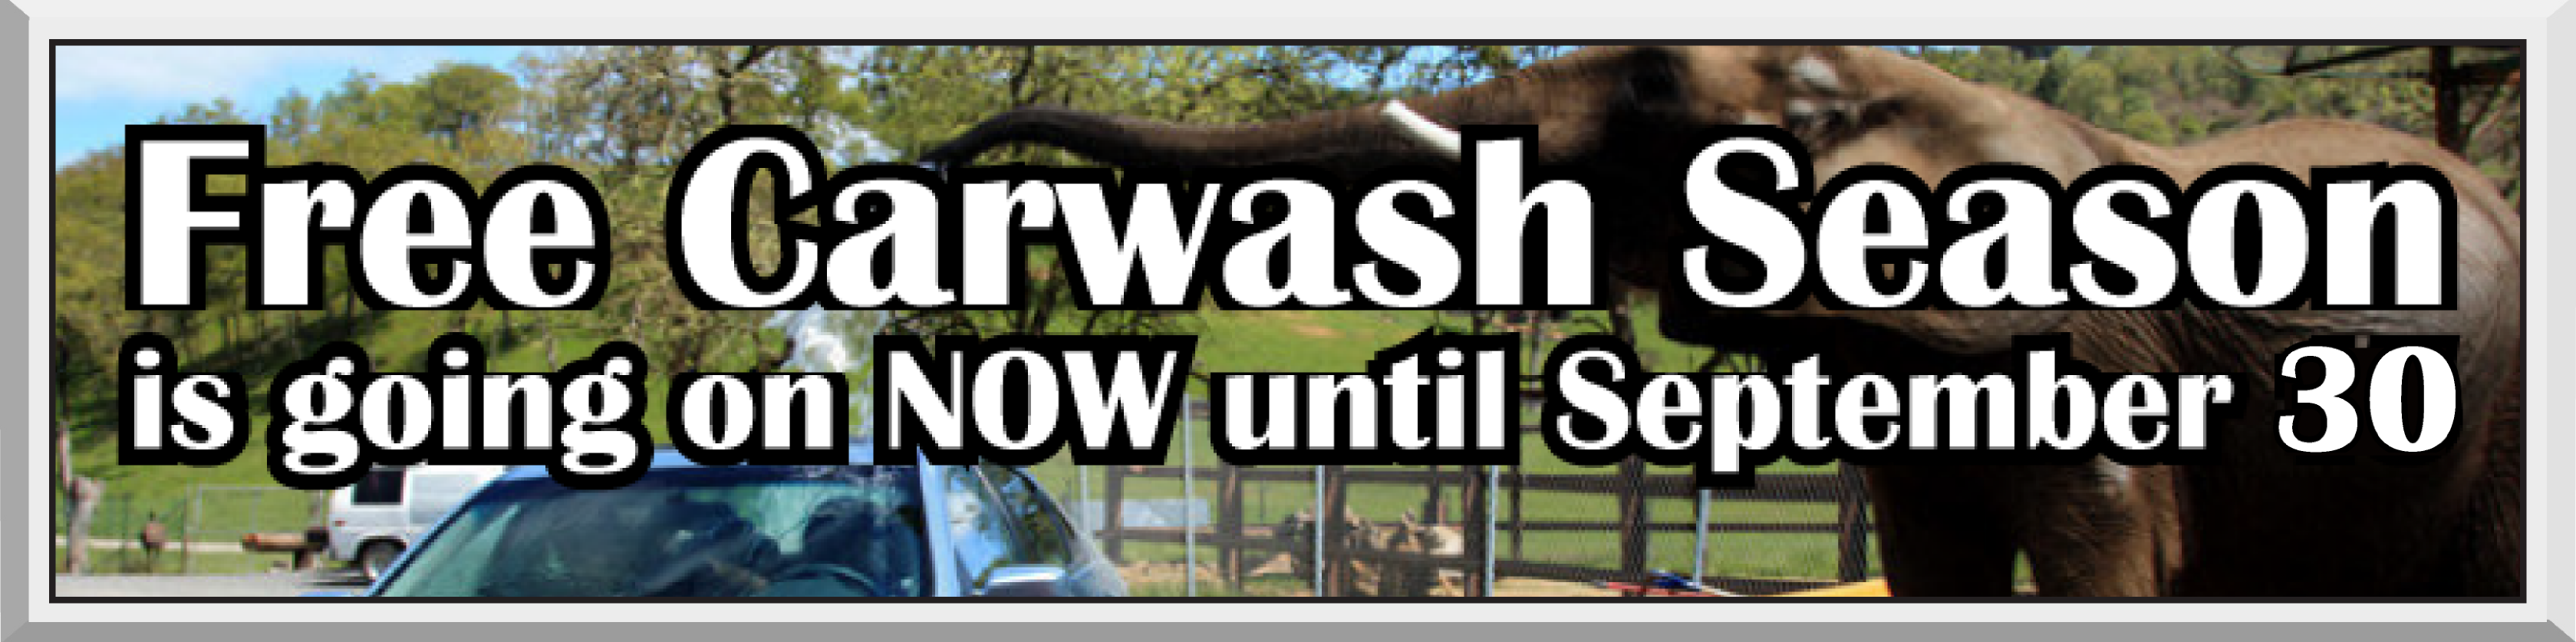 Free Carwash Season